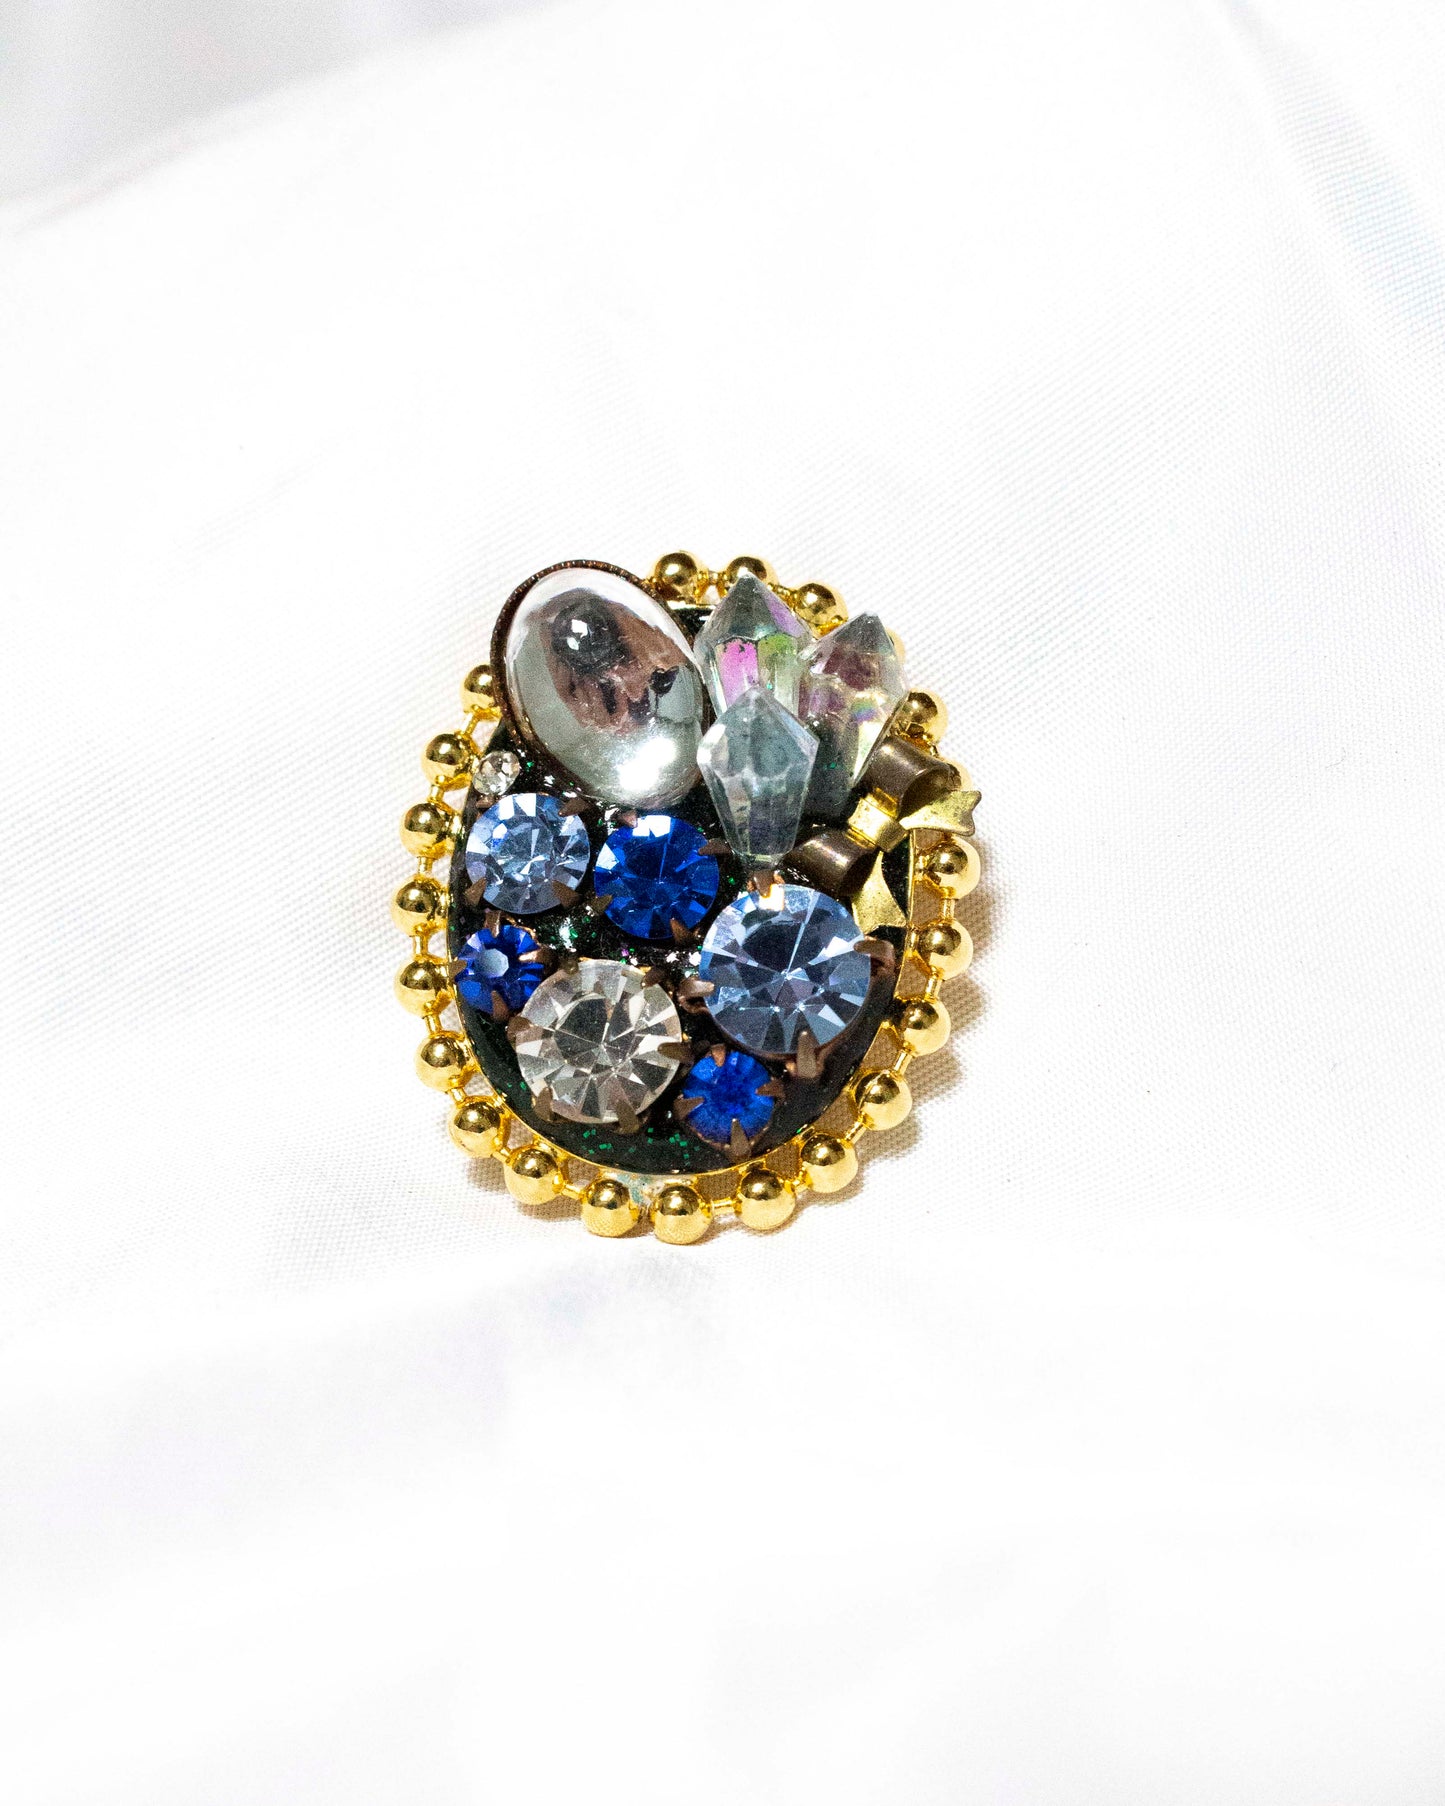 Blue crystal brooch